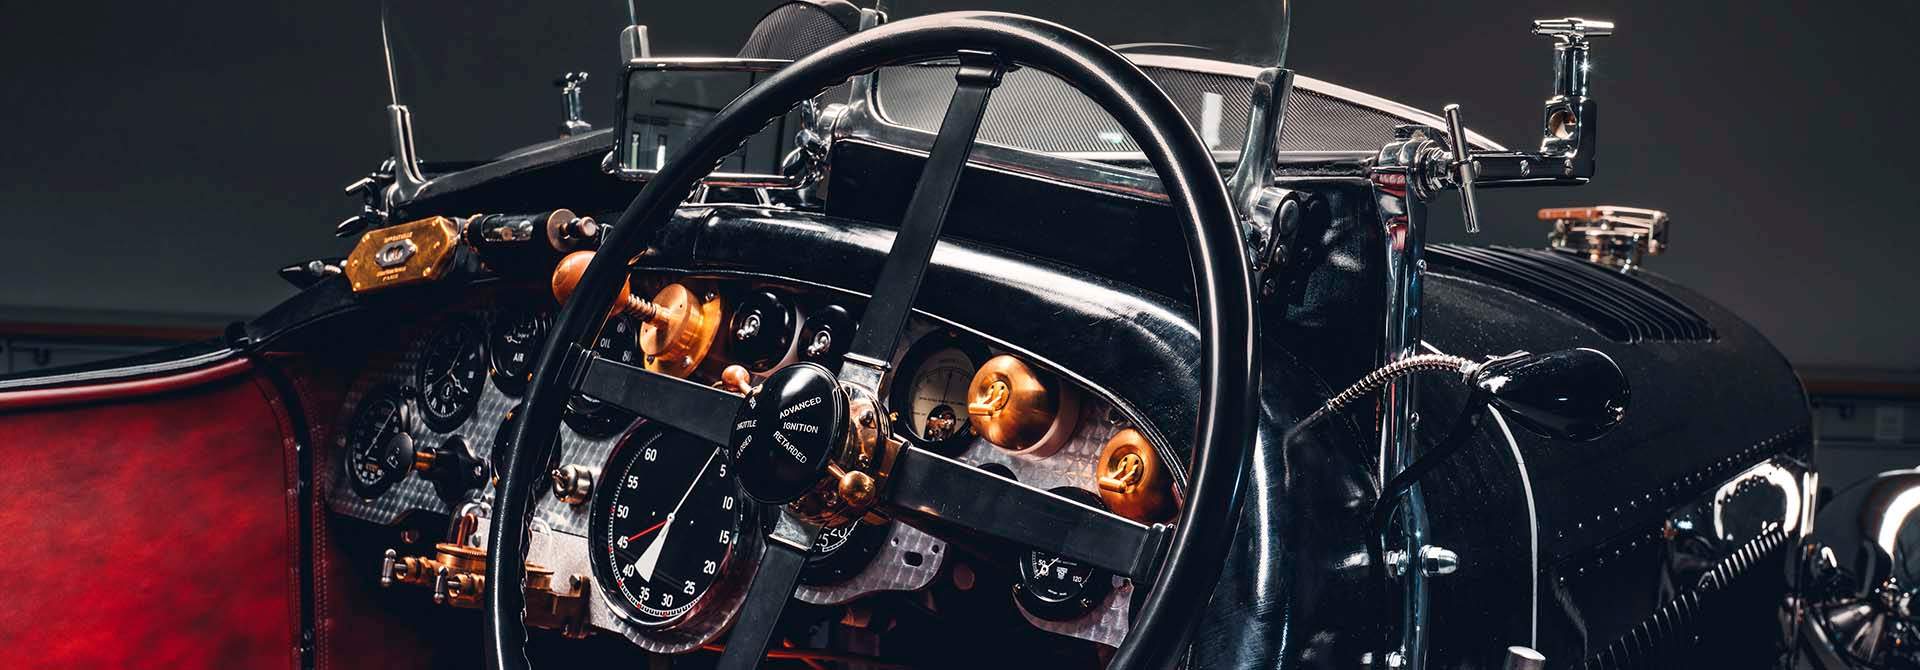 Bentley-Blower-Car-Zero-steering-wheel-1920x670.jpg